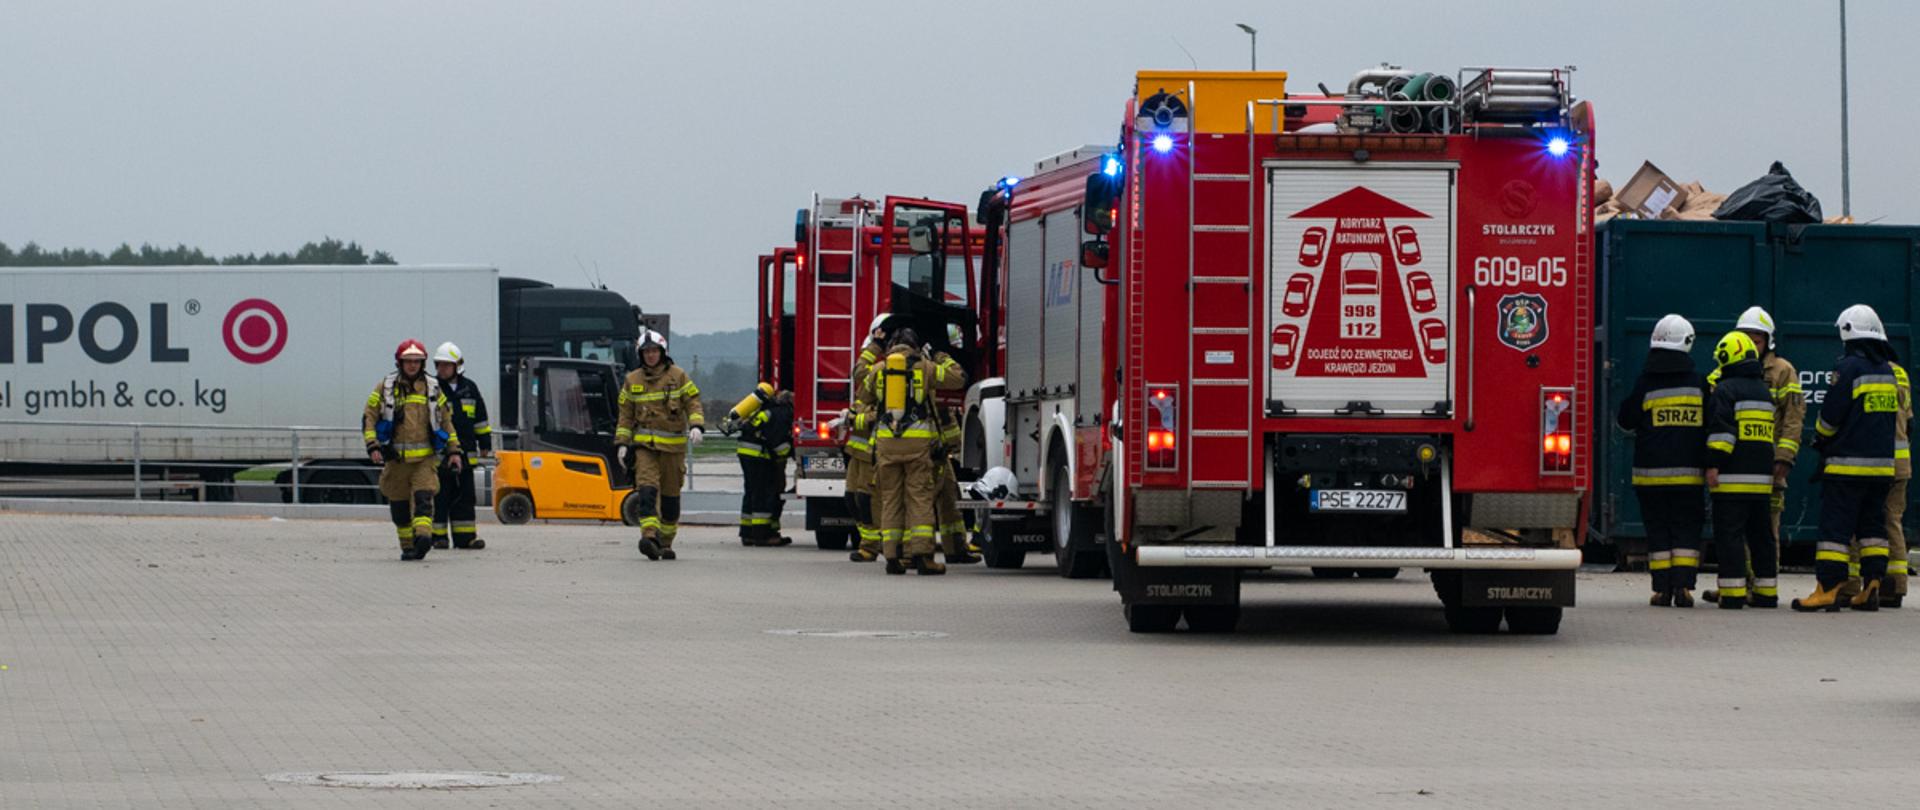 Na placu firmy samochody strażackie i ratownicy oraz Tir obok pojazdu ratowniczo - gaśniczego kontener